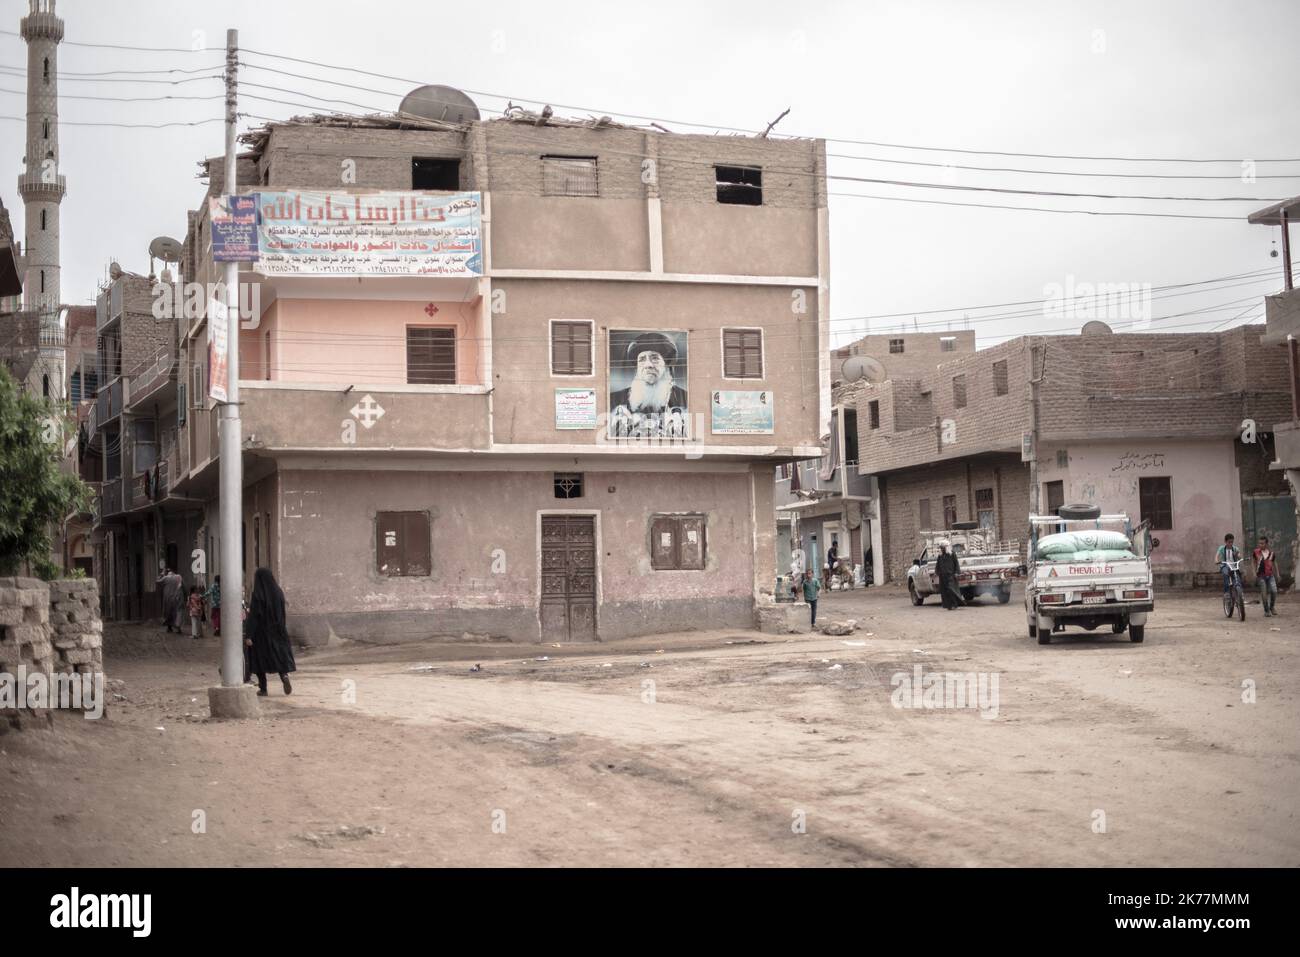 / 08/04/2019 - Egitto - strade di un tipico villaggio dell'Alto Egitto, dove la disoccupazione e l'isolamento stanno aumentando la povertà. Foto Stock